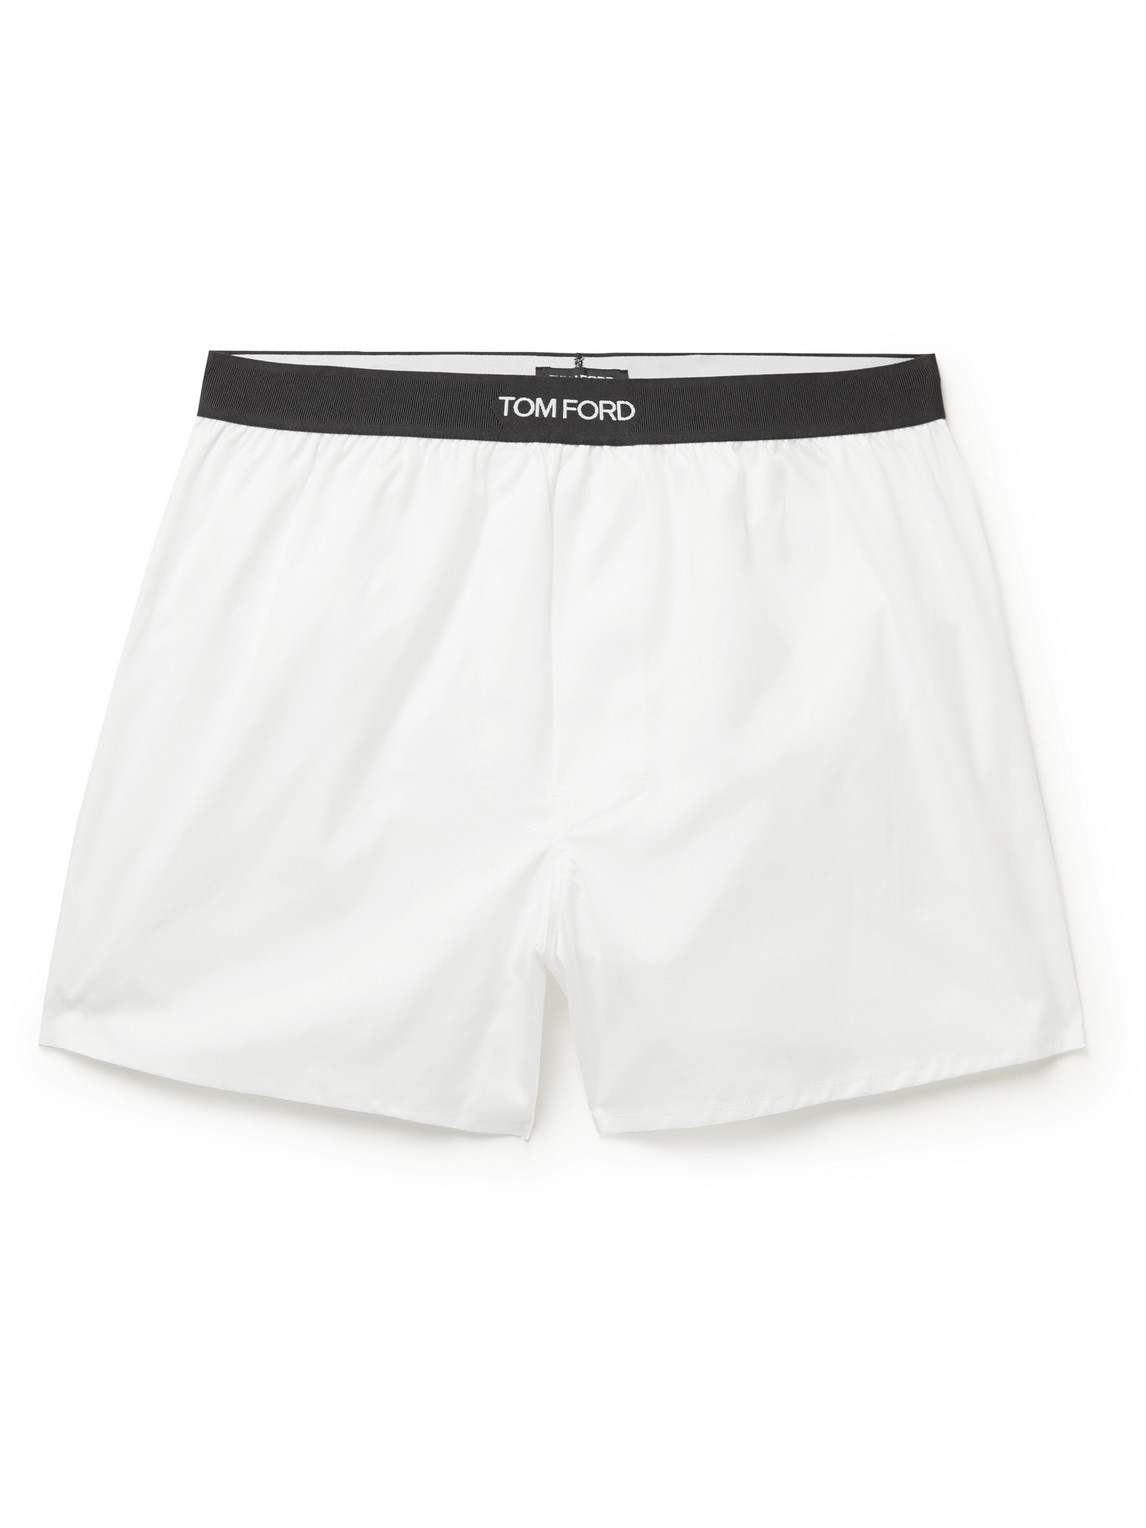 TOM FORD - Cotton Boxer Shorts - Men - White - XXL von TOM FORD